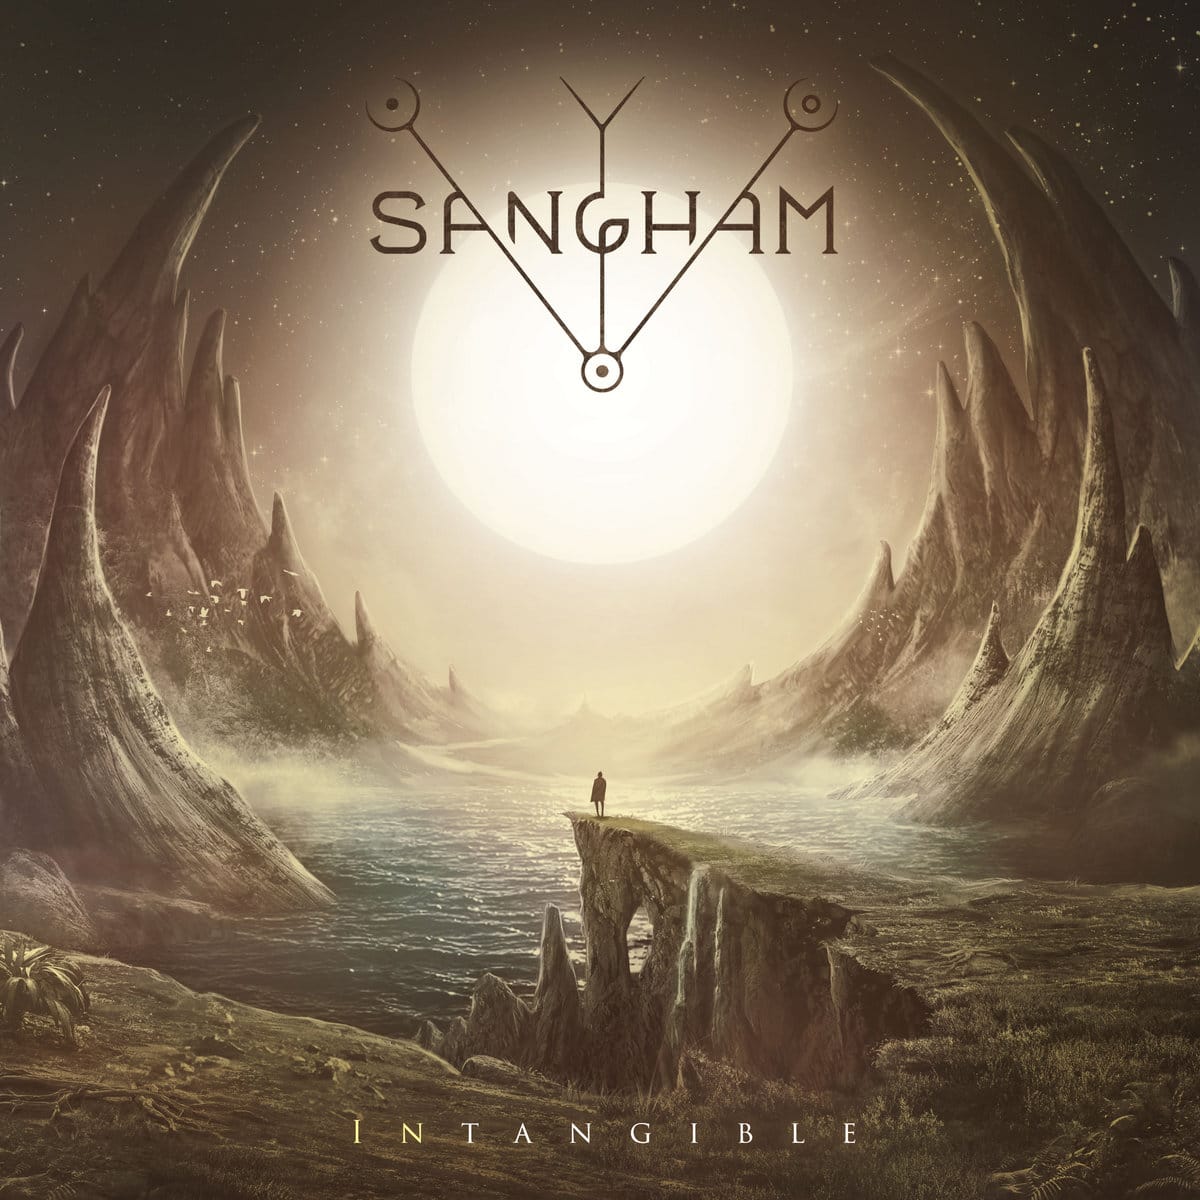 Intangible - Premier album de Sangham